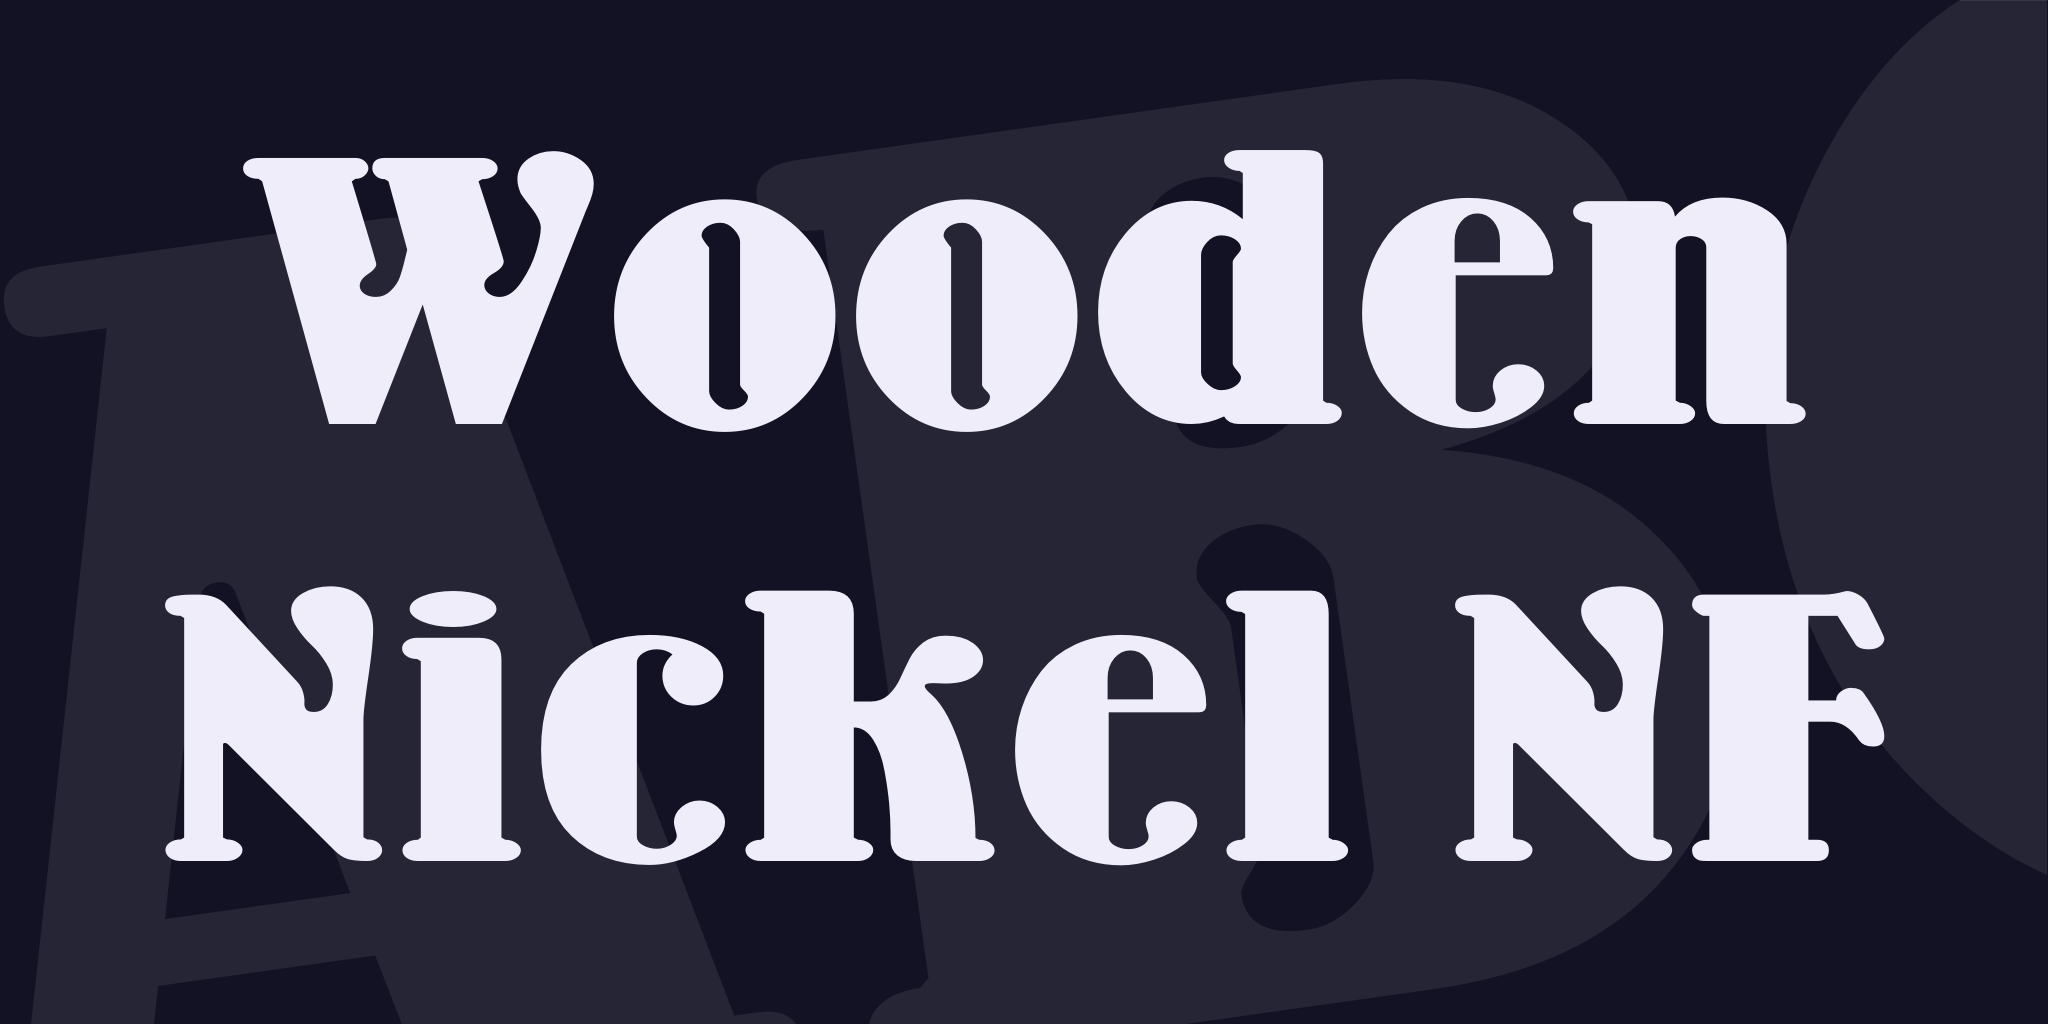 Wooden Nickel Nf